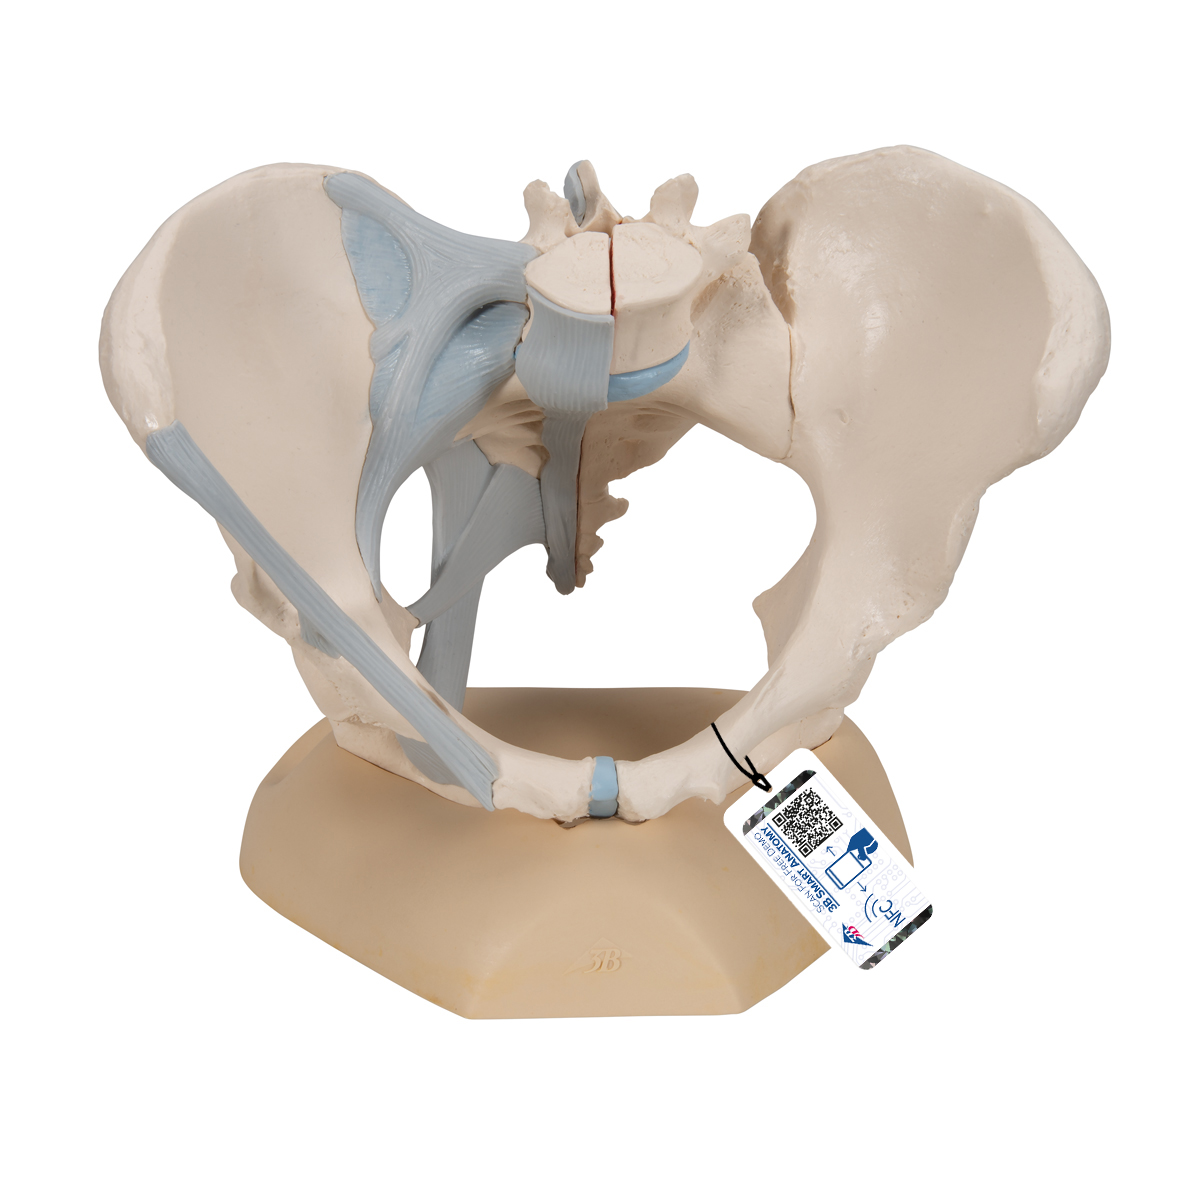 Weibliches Becken Modell mit Bändern, 3-teilig - 3B Smart Anatomy, Bestellnummer 1000286, H20/2, 3B Scientific